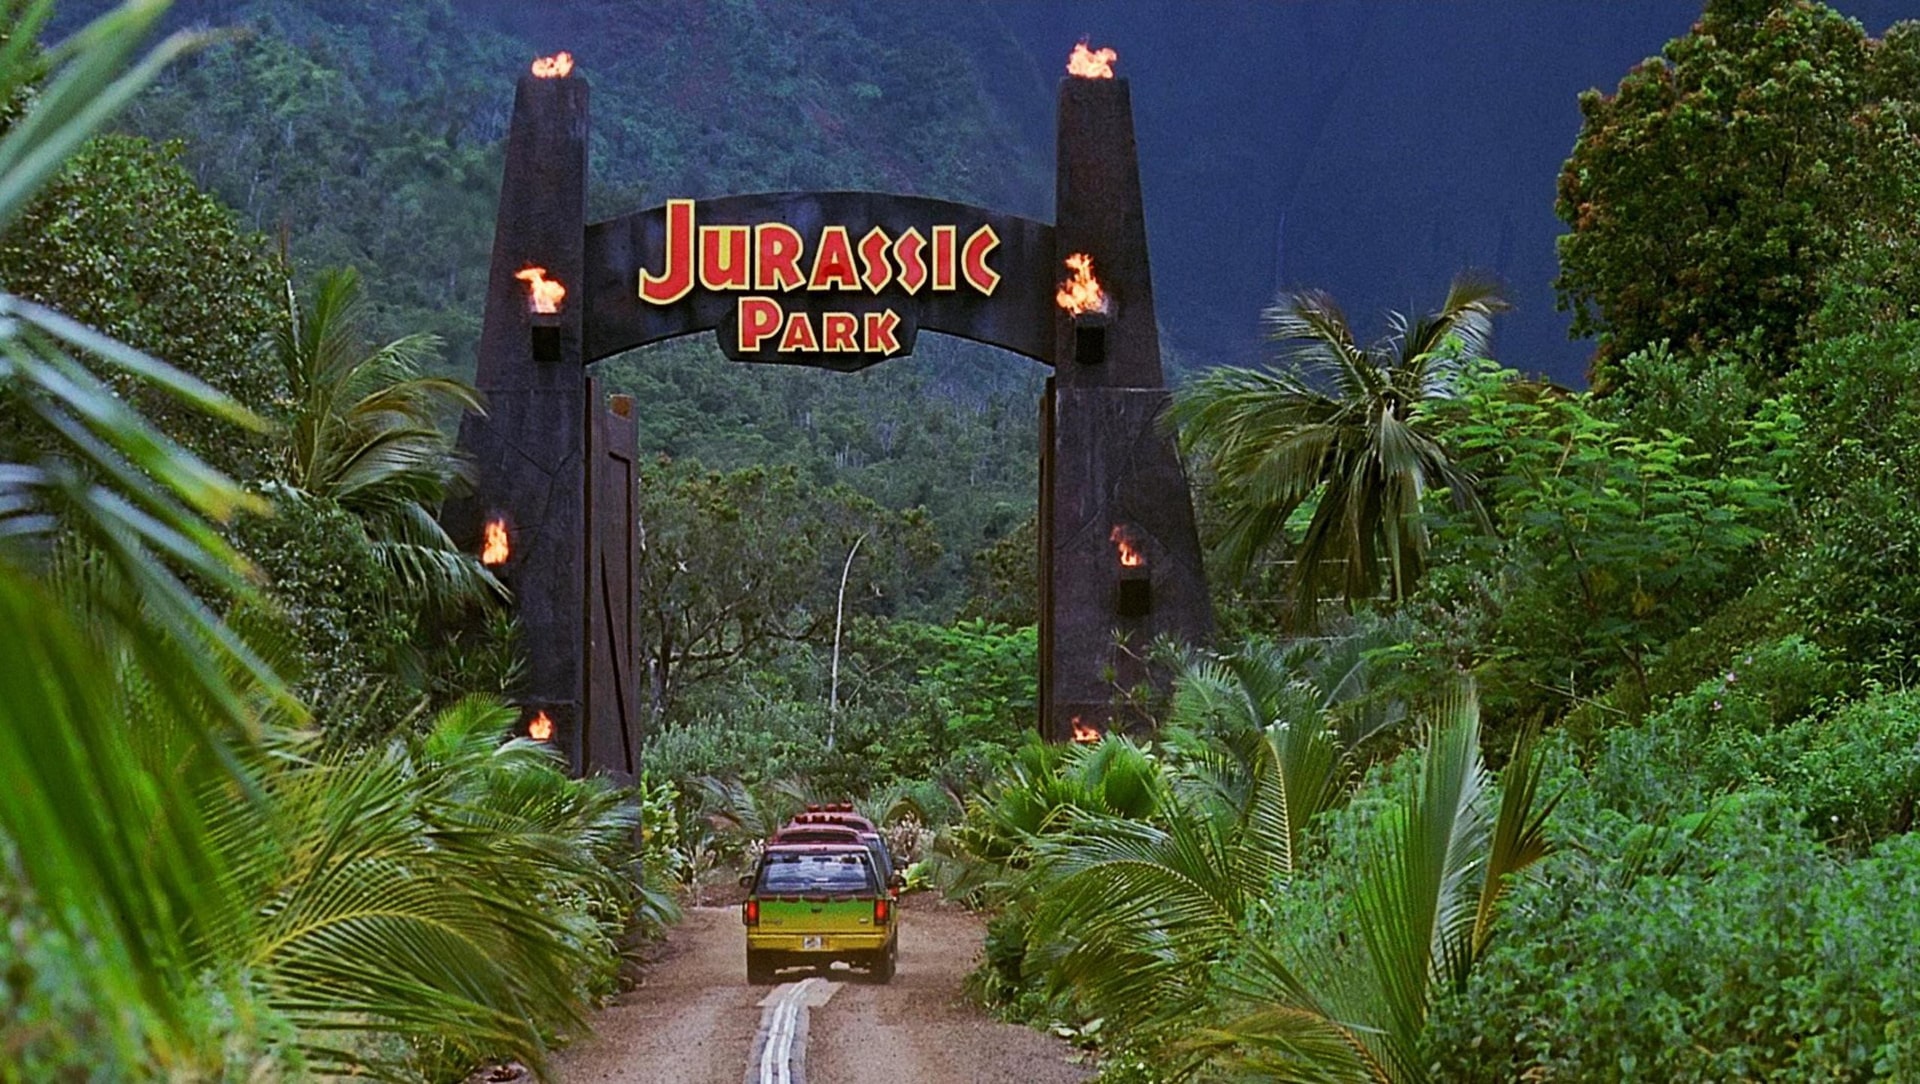 Editoriale | Jurassic Park: cosa rimane del film di Steven Spielberg dopo 25 anni